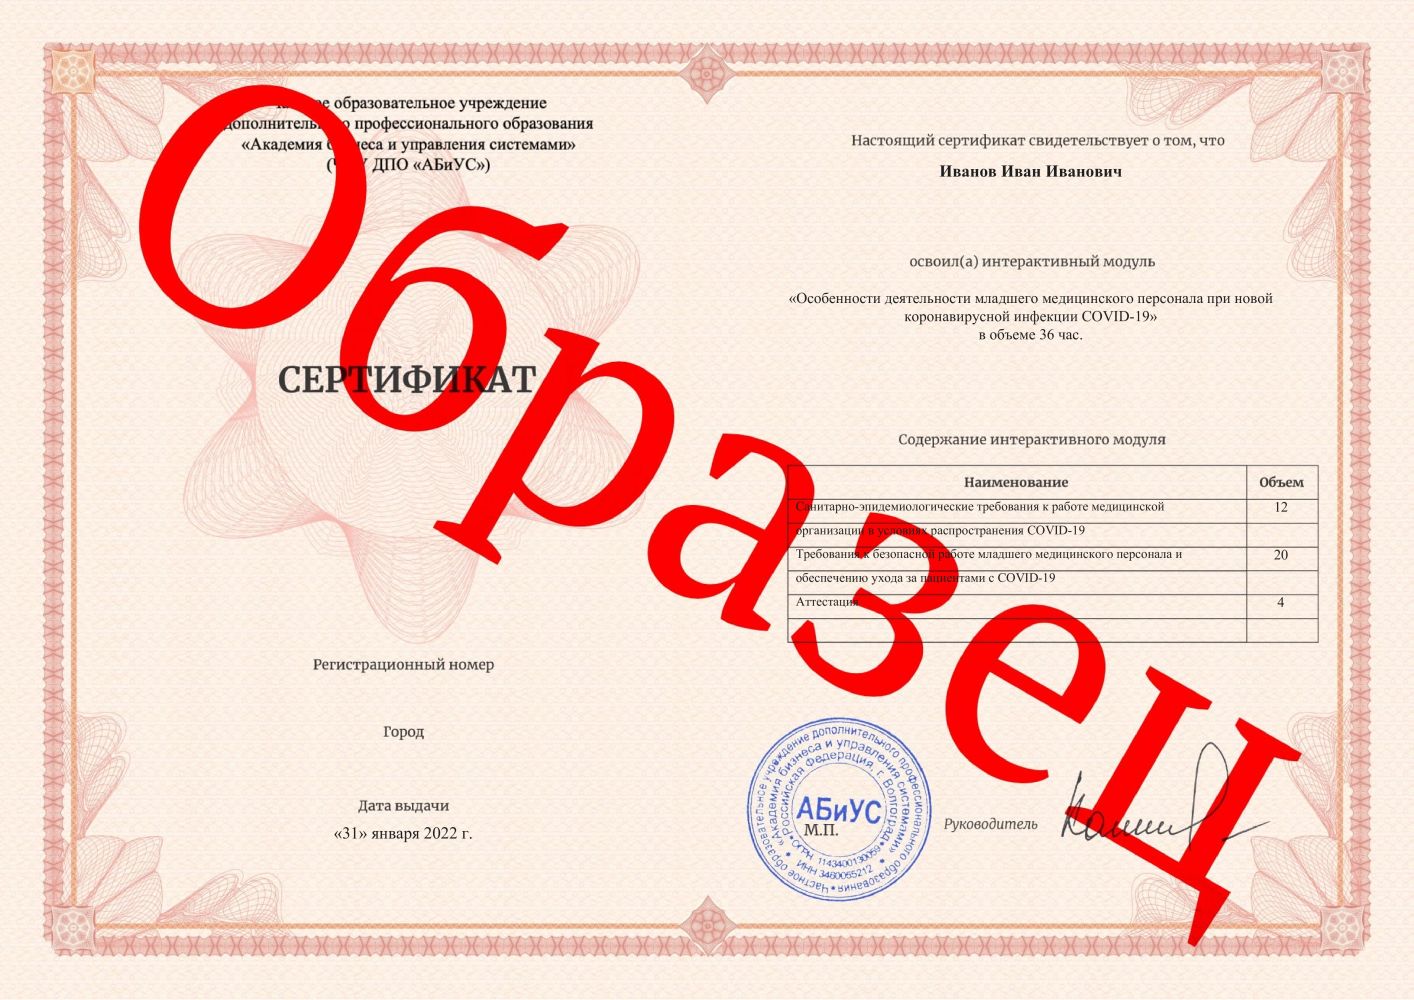 Сертификат Особенности деятельности младшего медицинского персонала при новой коронавирусной инфекции COVID-19 36 часов 1133 руб.